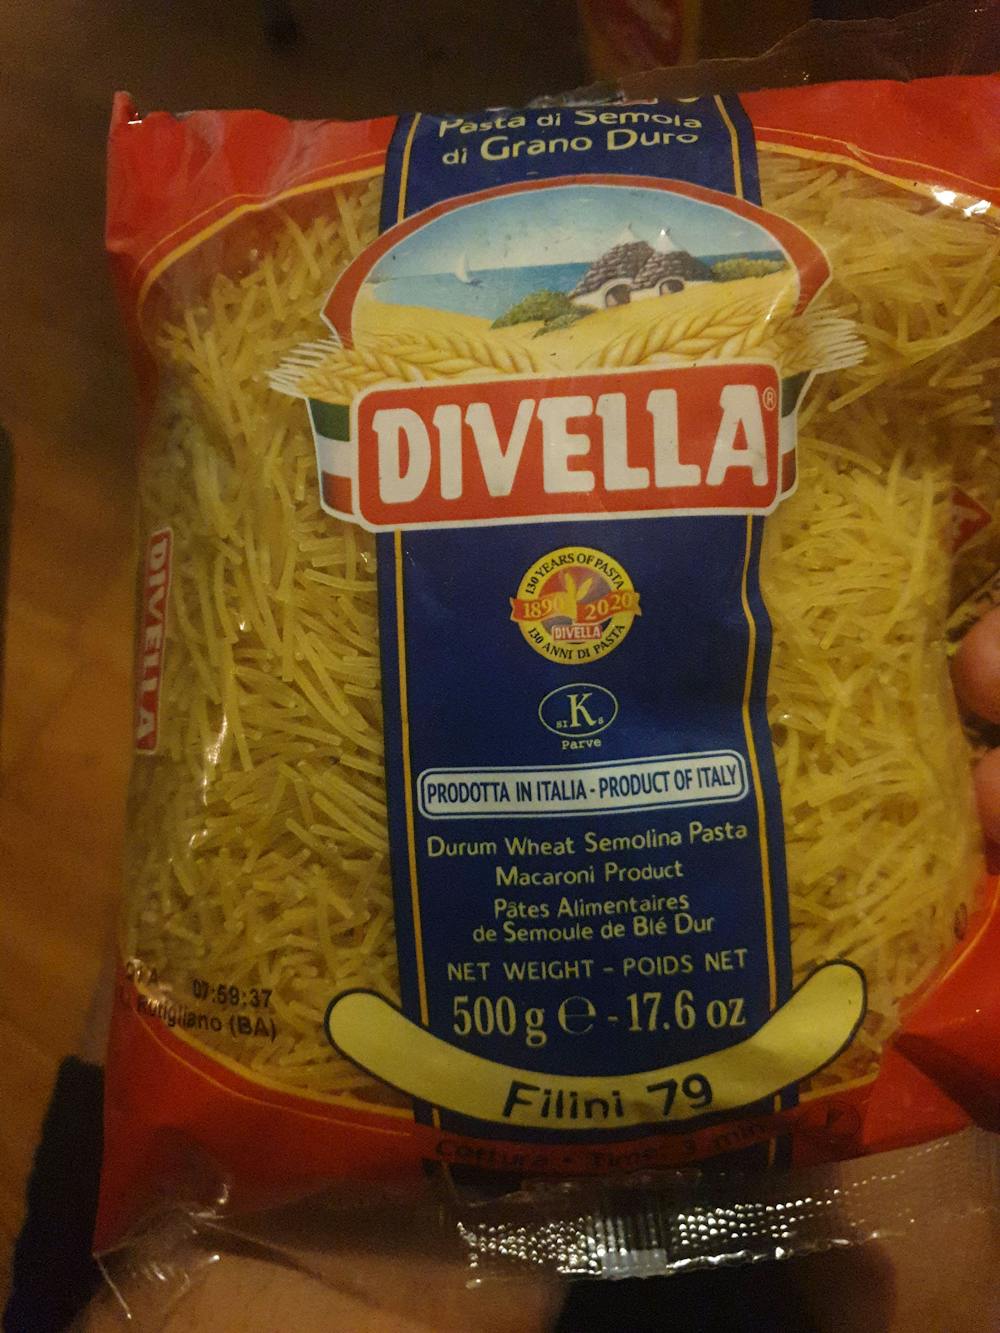 Durum wheat semolina pasta, Divella